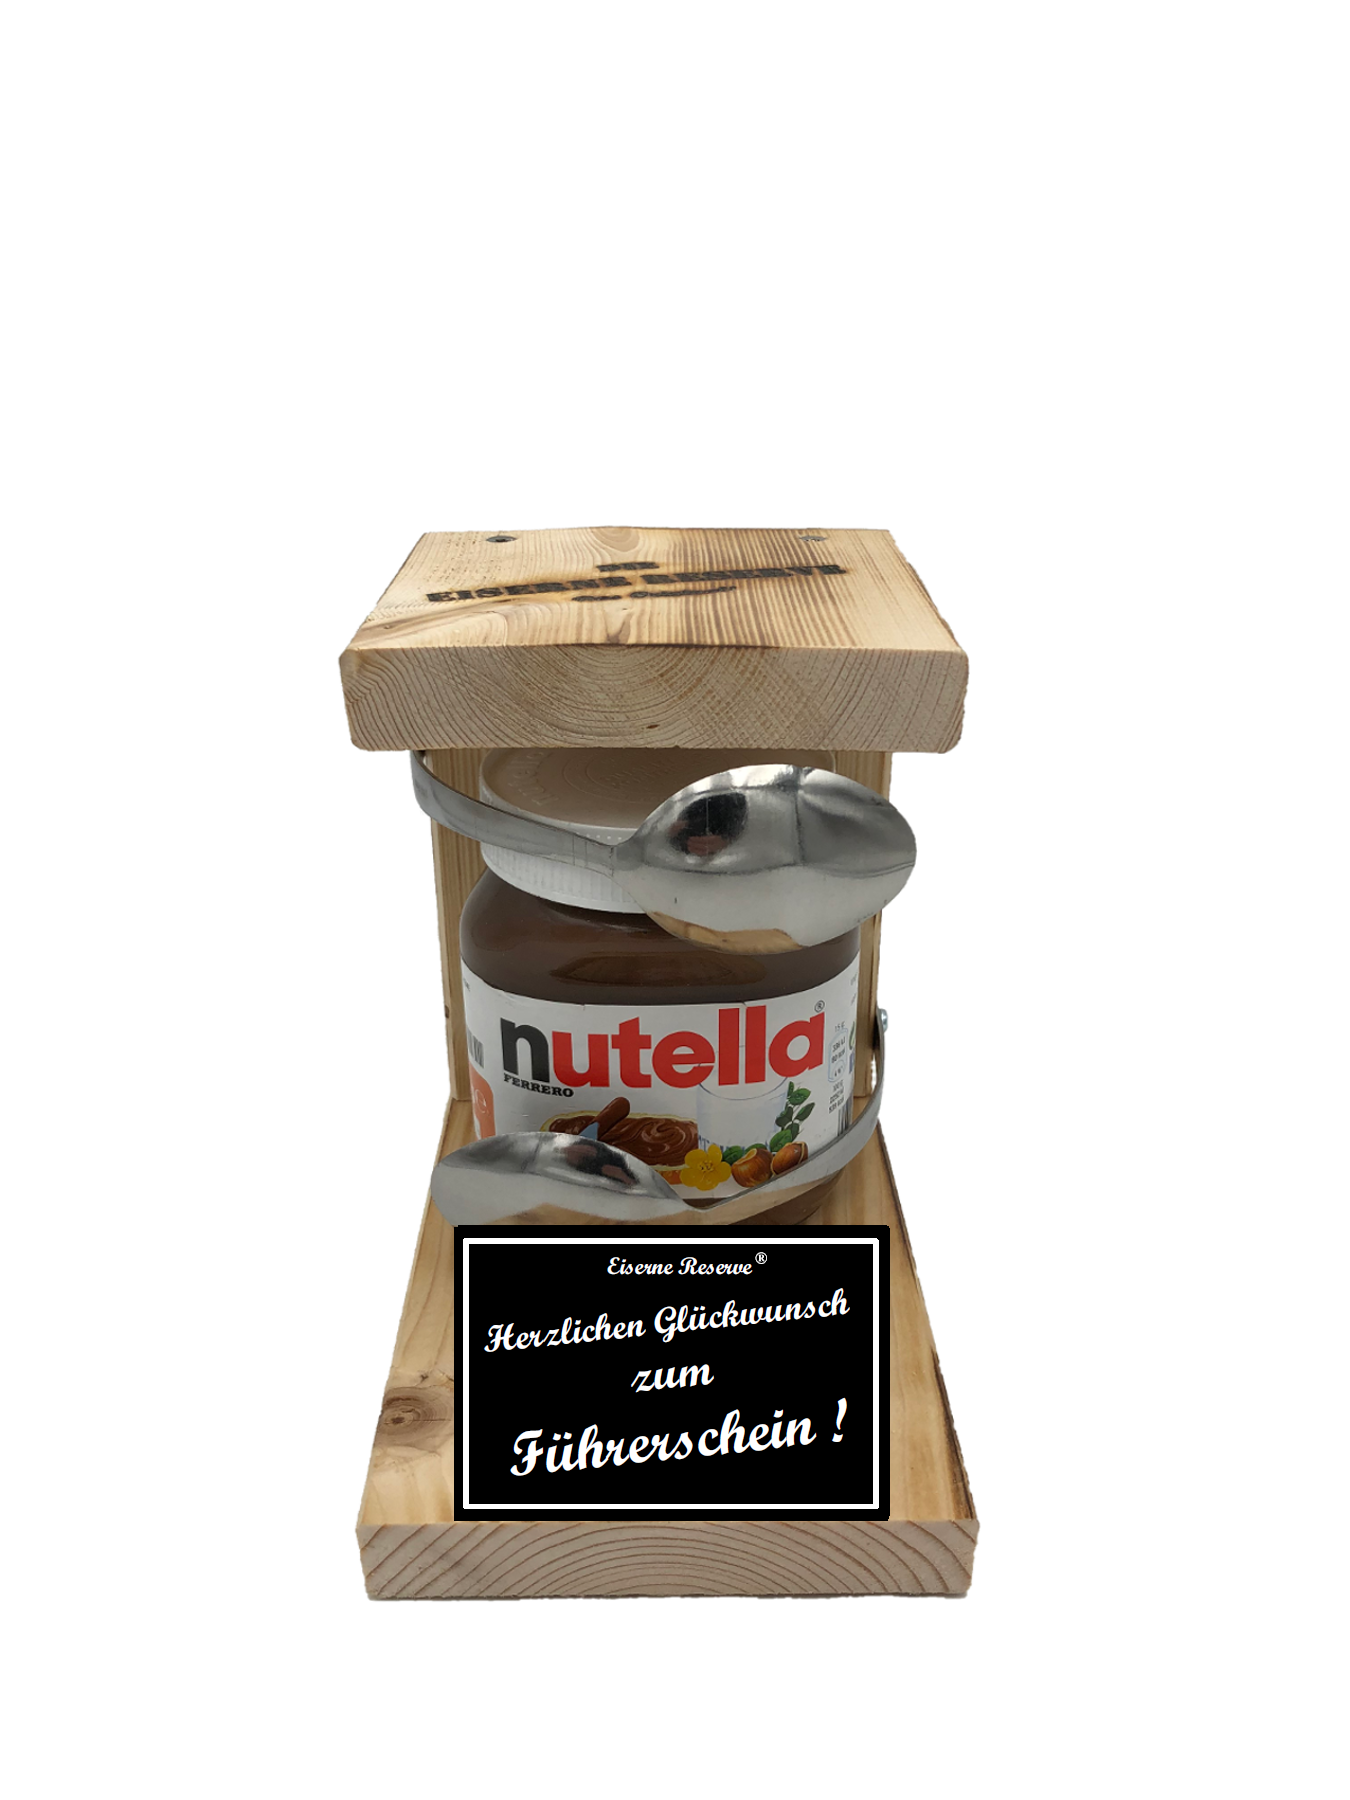 Geschenke zum Führerschein Löffel Nutella Geschenk - Die Nutella